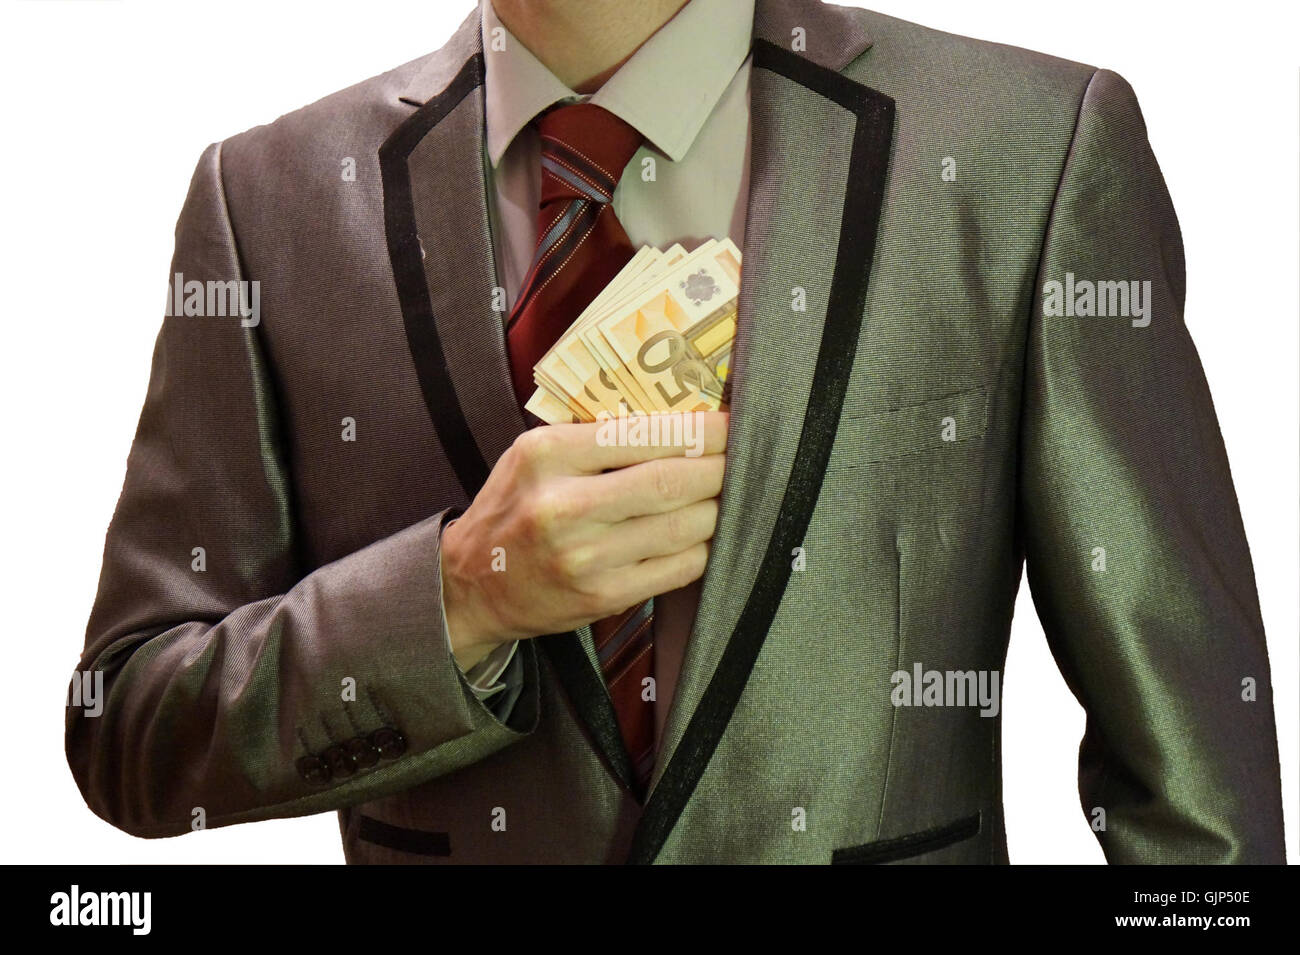 1 corruzione uomo in tuta sfondo bianco euro banconote nascosto nella sinistra nella tasca di una giacca royalty free senza copyright, di pubblico dominio immagine fotografica Foto Stock